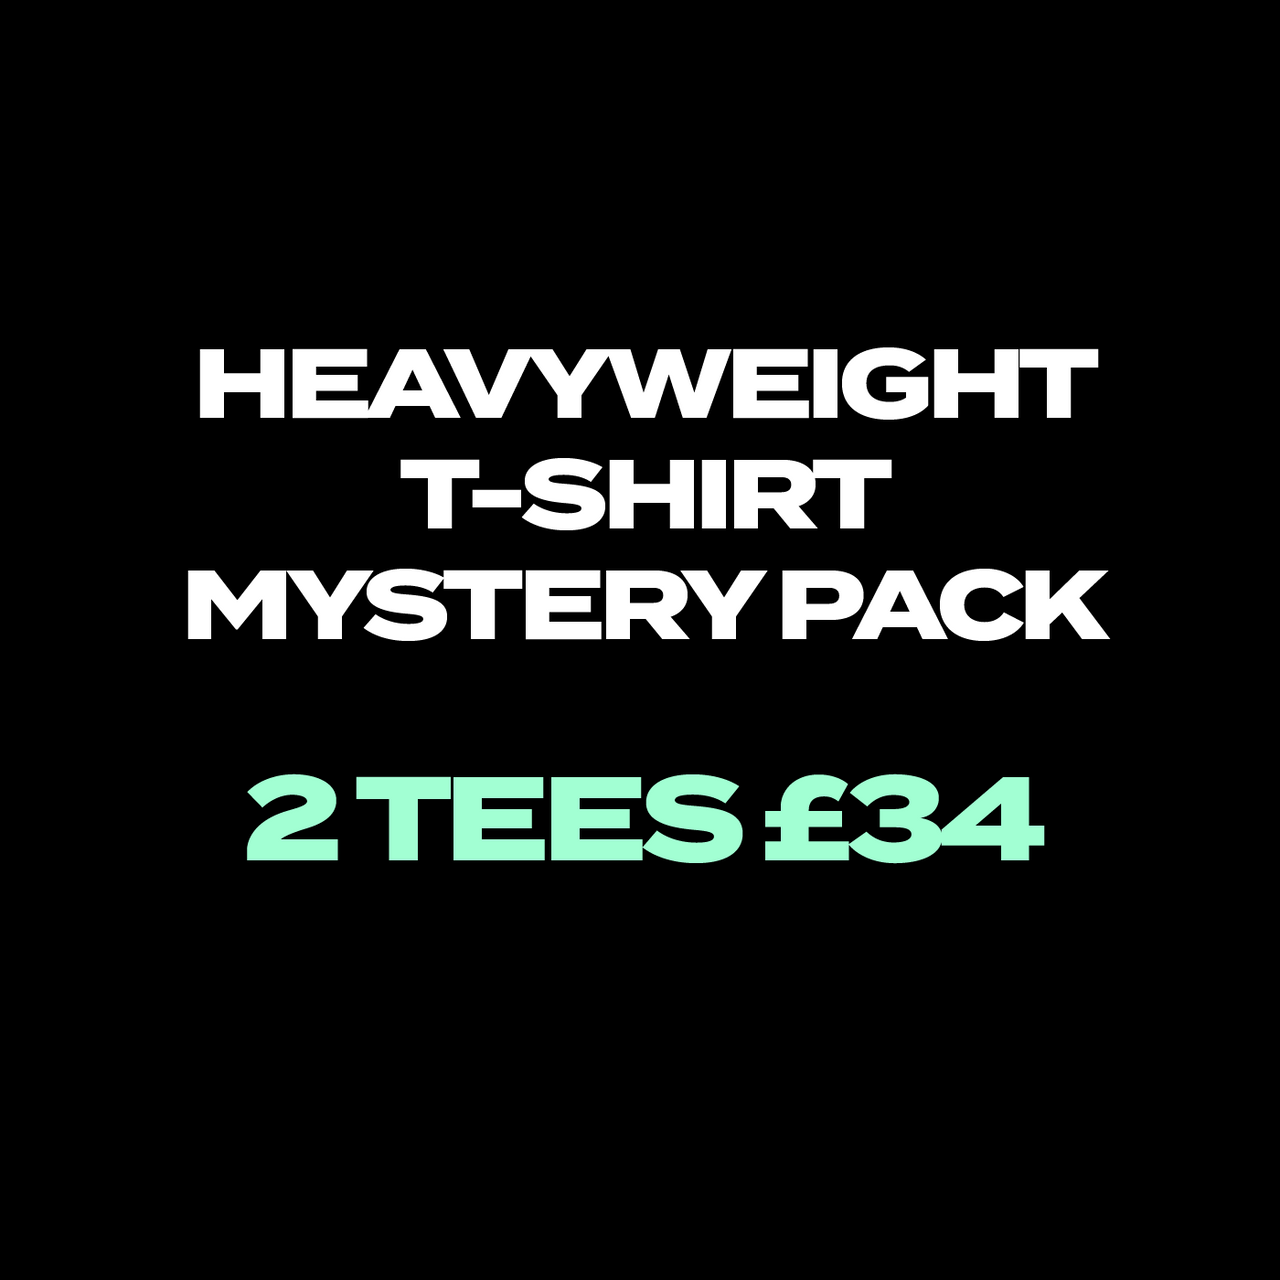 Heavyweight T-shirt Bundle Pack